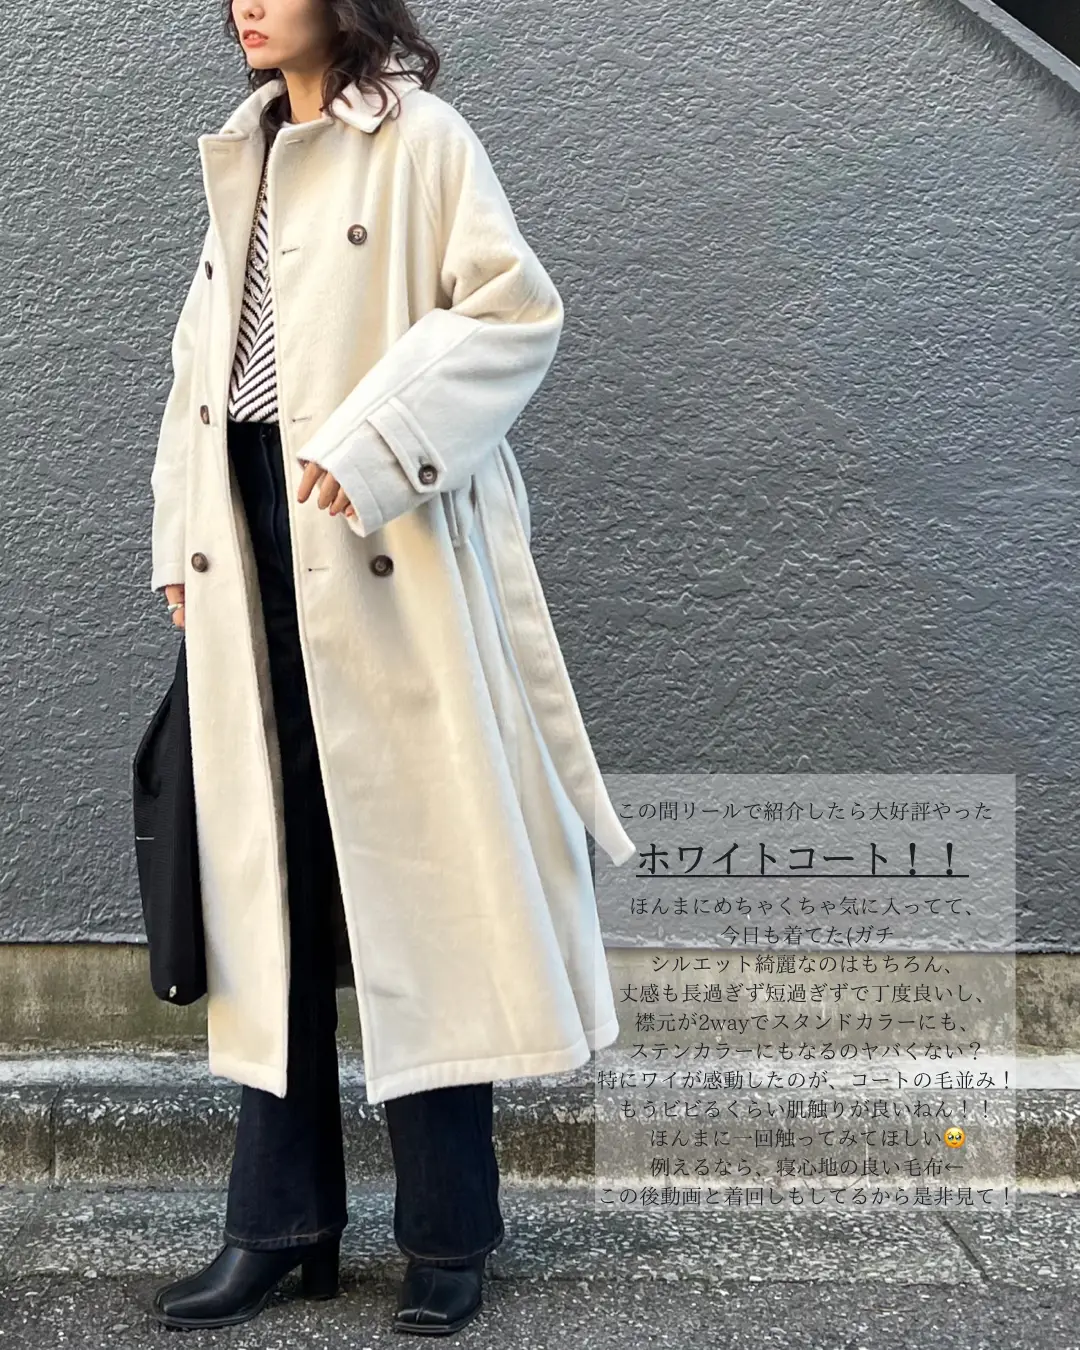 重くないのに暖かい ホワイトコート-- | yuuが投稿したフォト